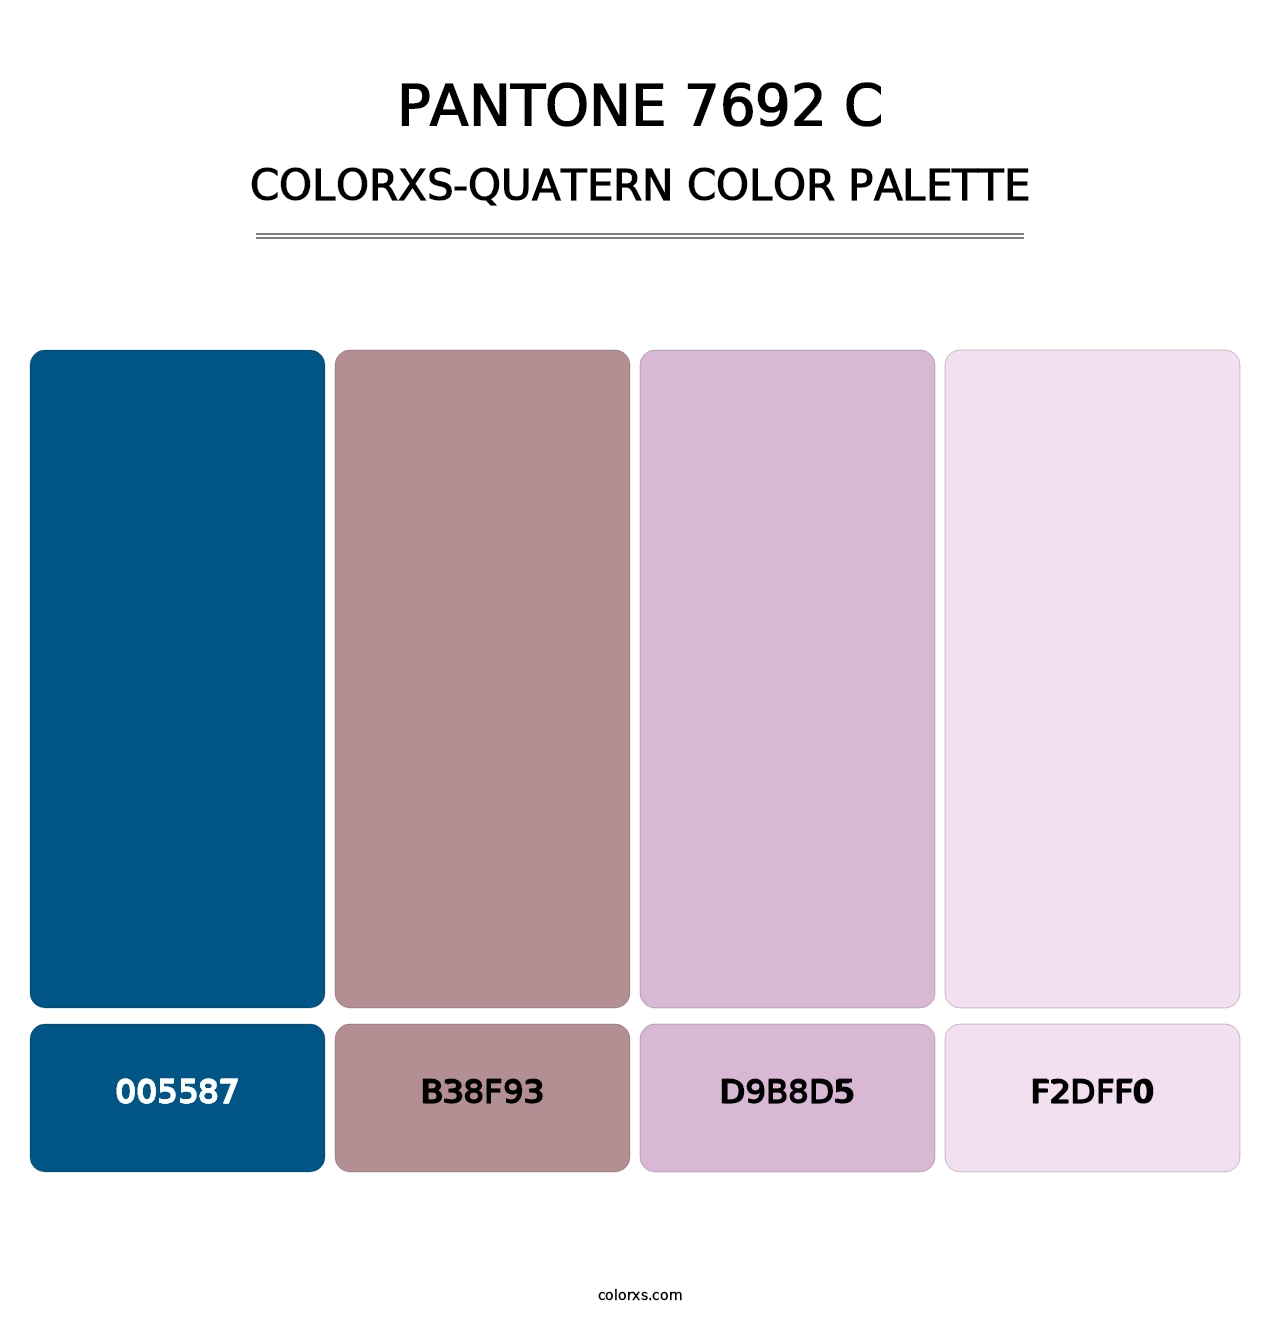 PANTONE 7692 C - Colorxs Quatern Palette